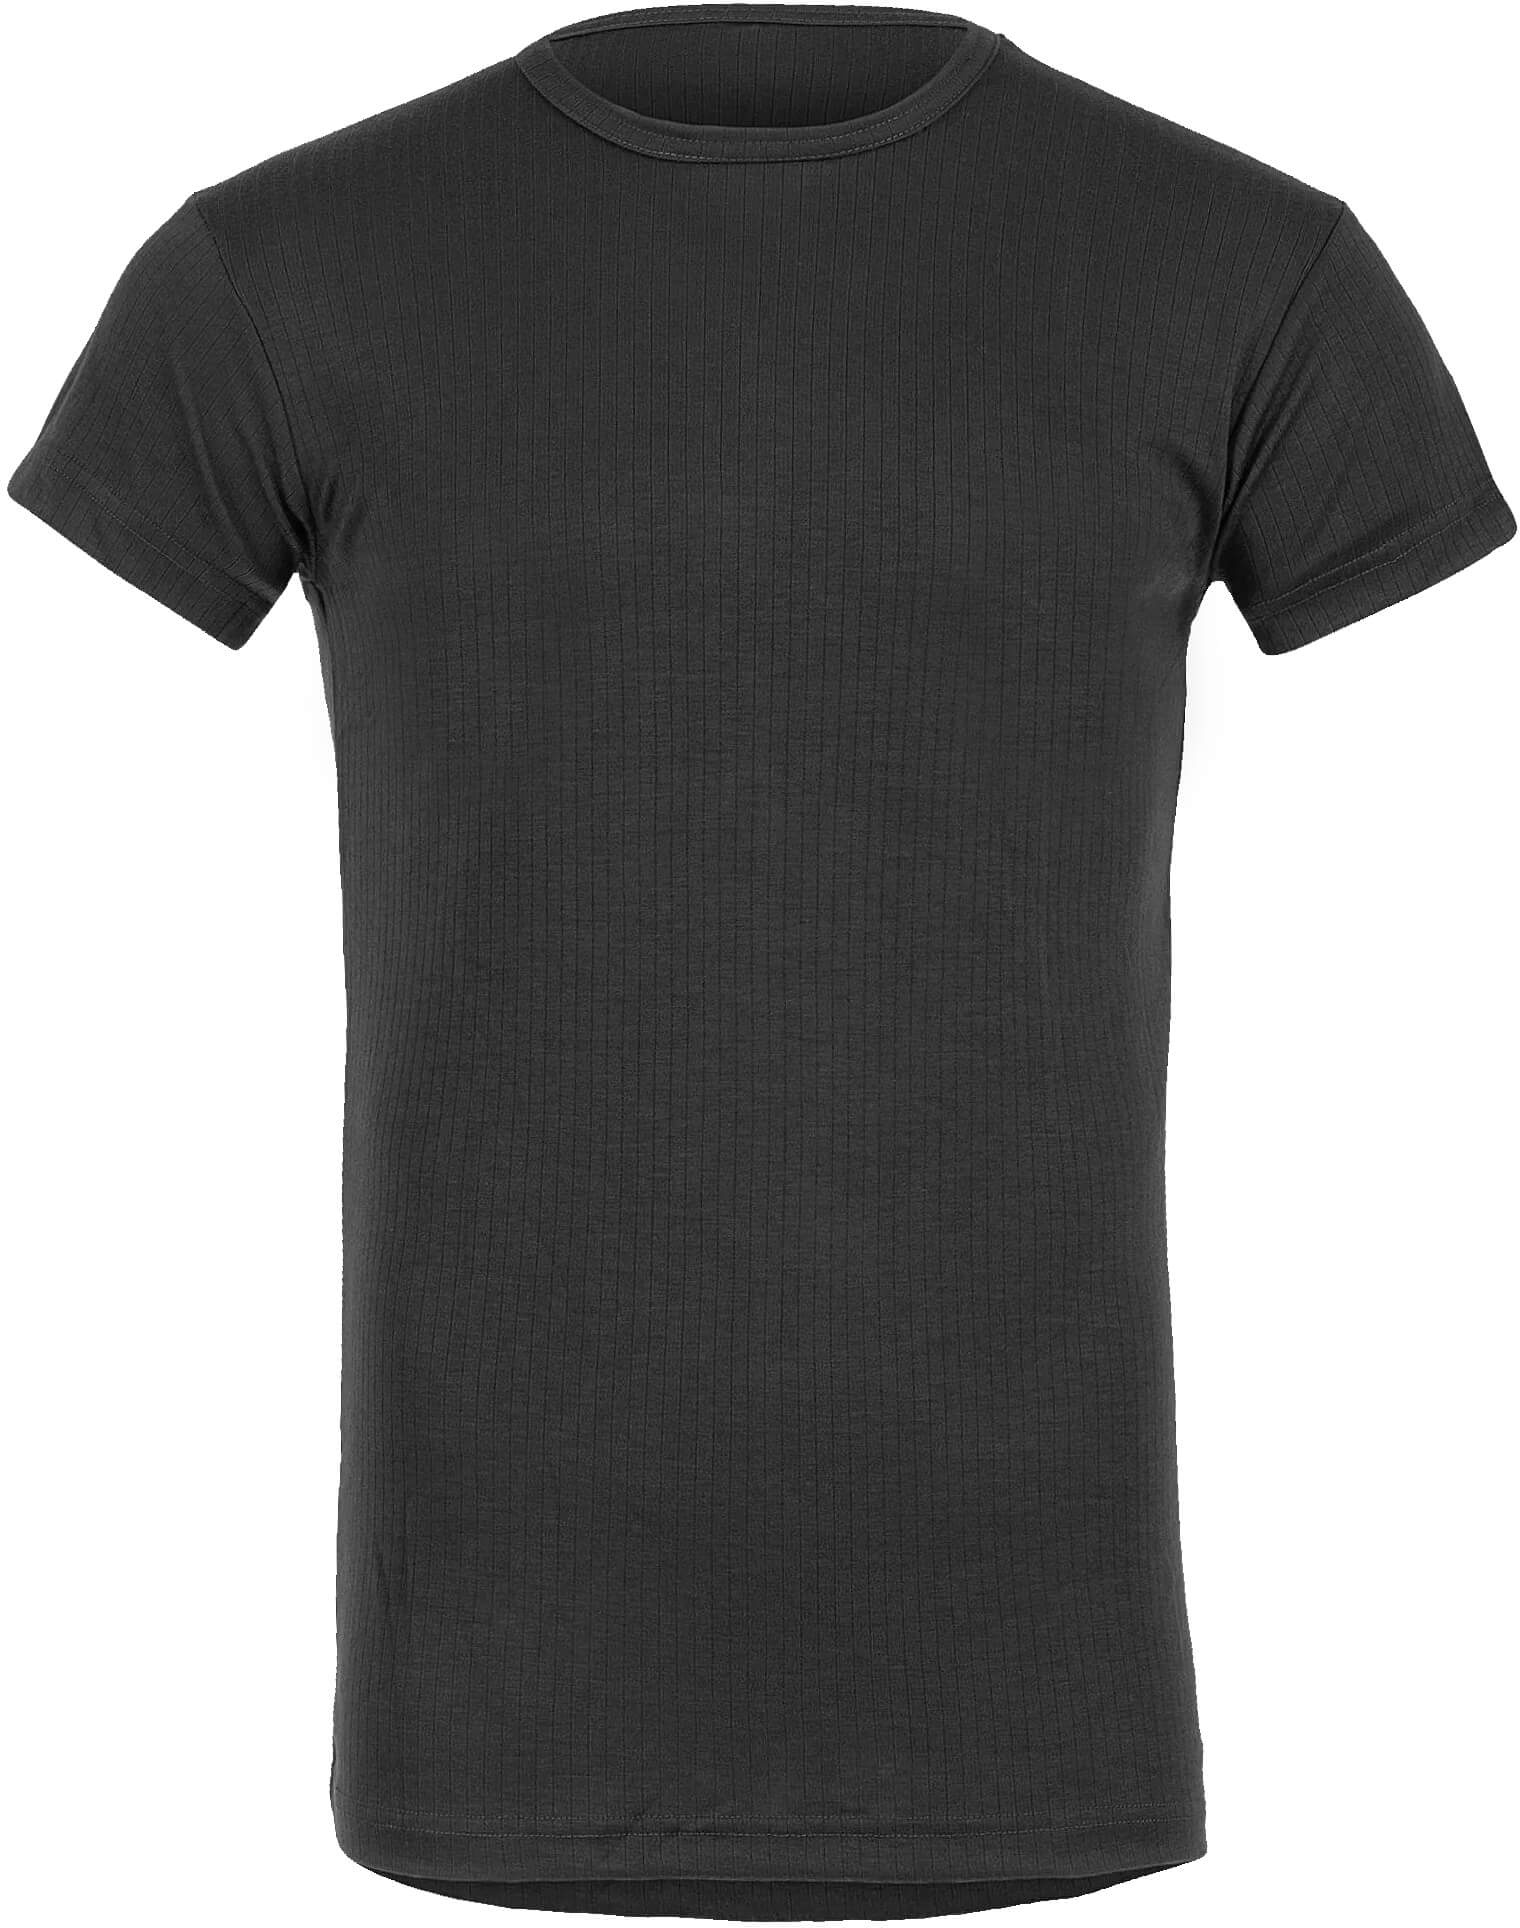 Highlander Thermal Unterhemd kurzarm schwarz, Größe XL